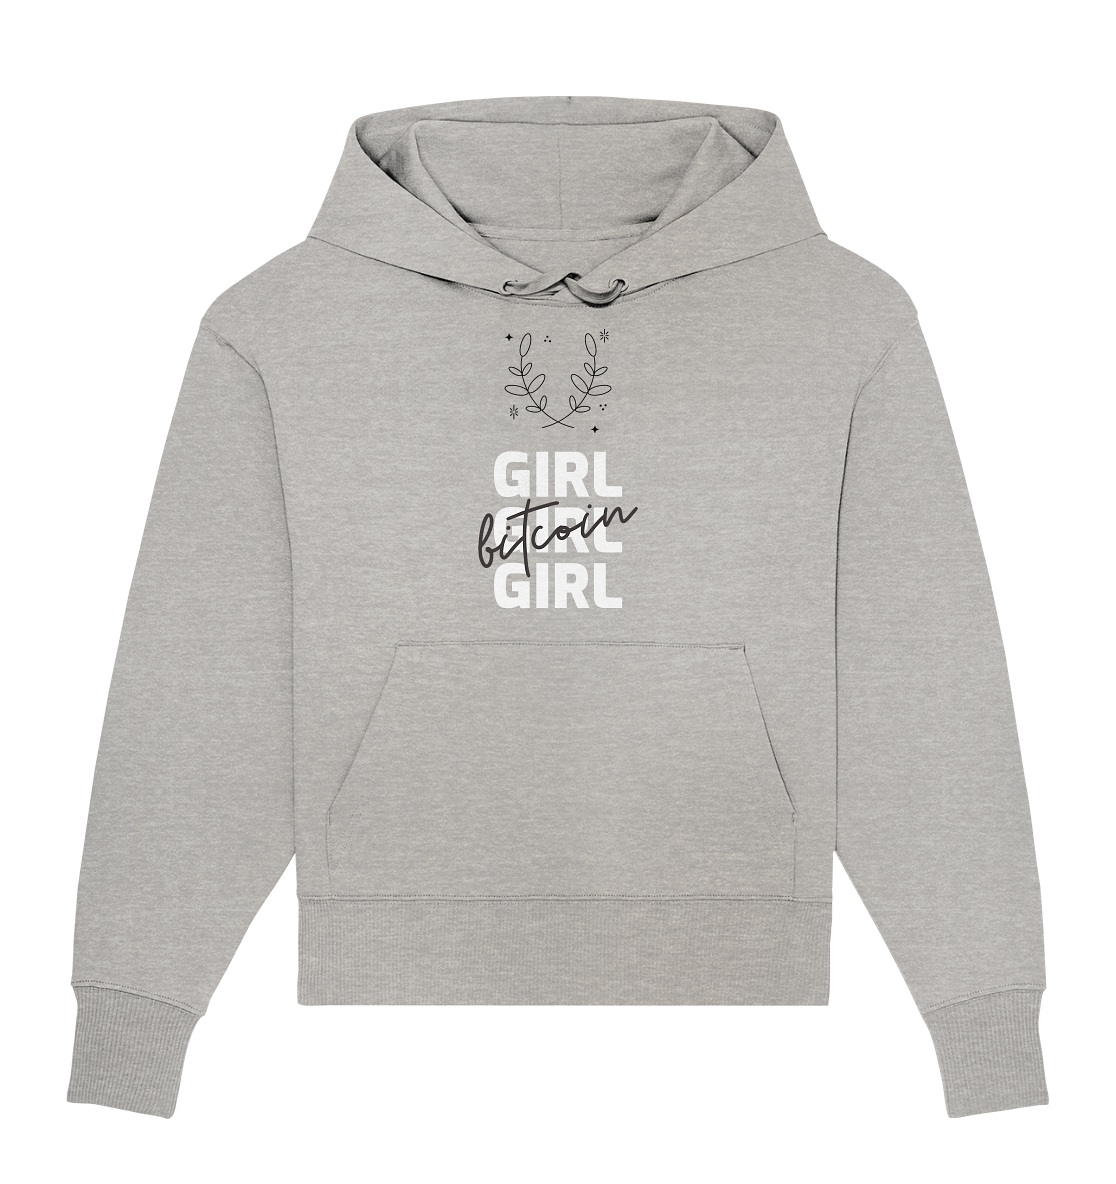 Bitcoin Girl Girl Girl  - Organic Oversize Hoodie